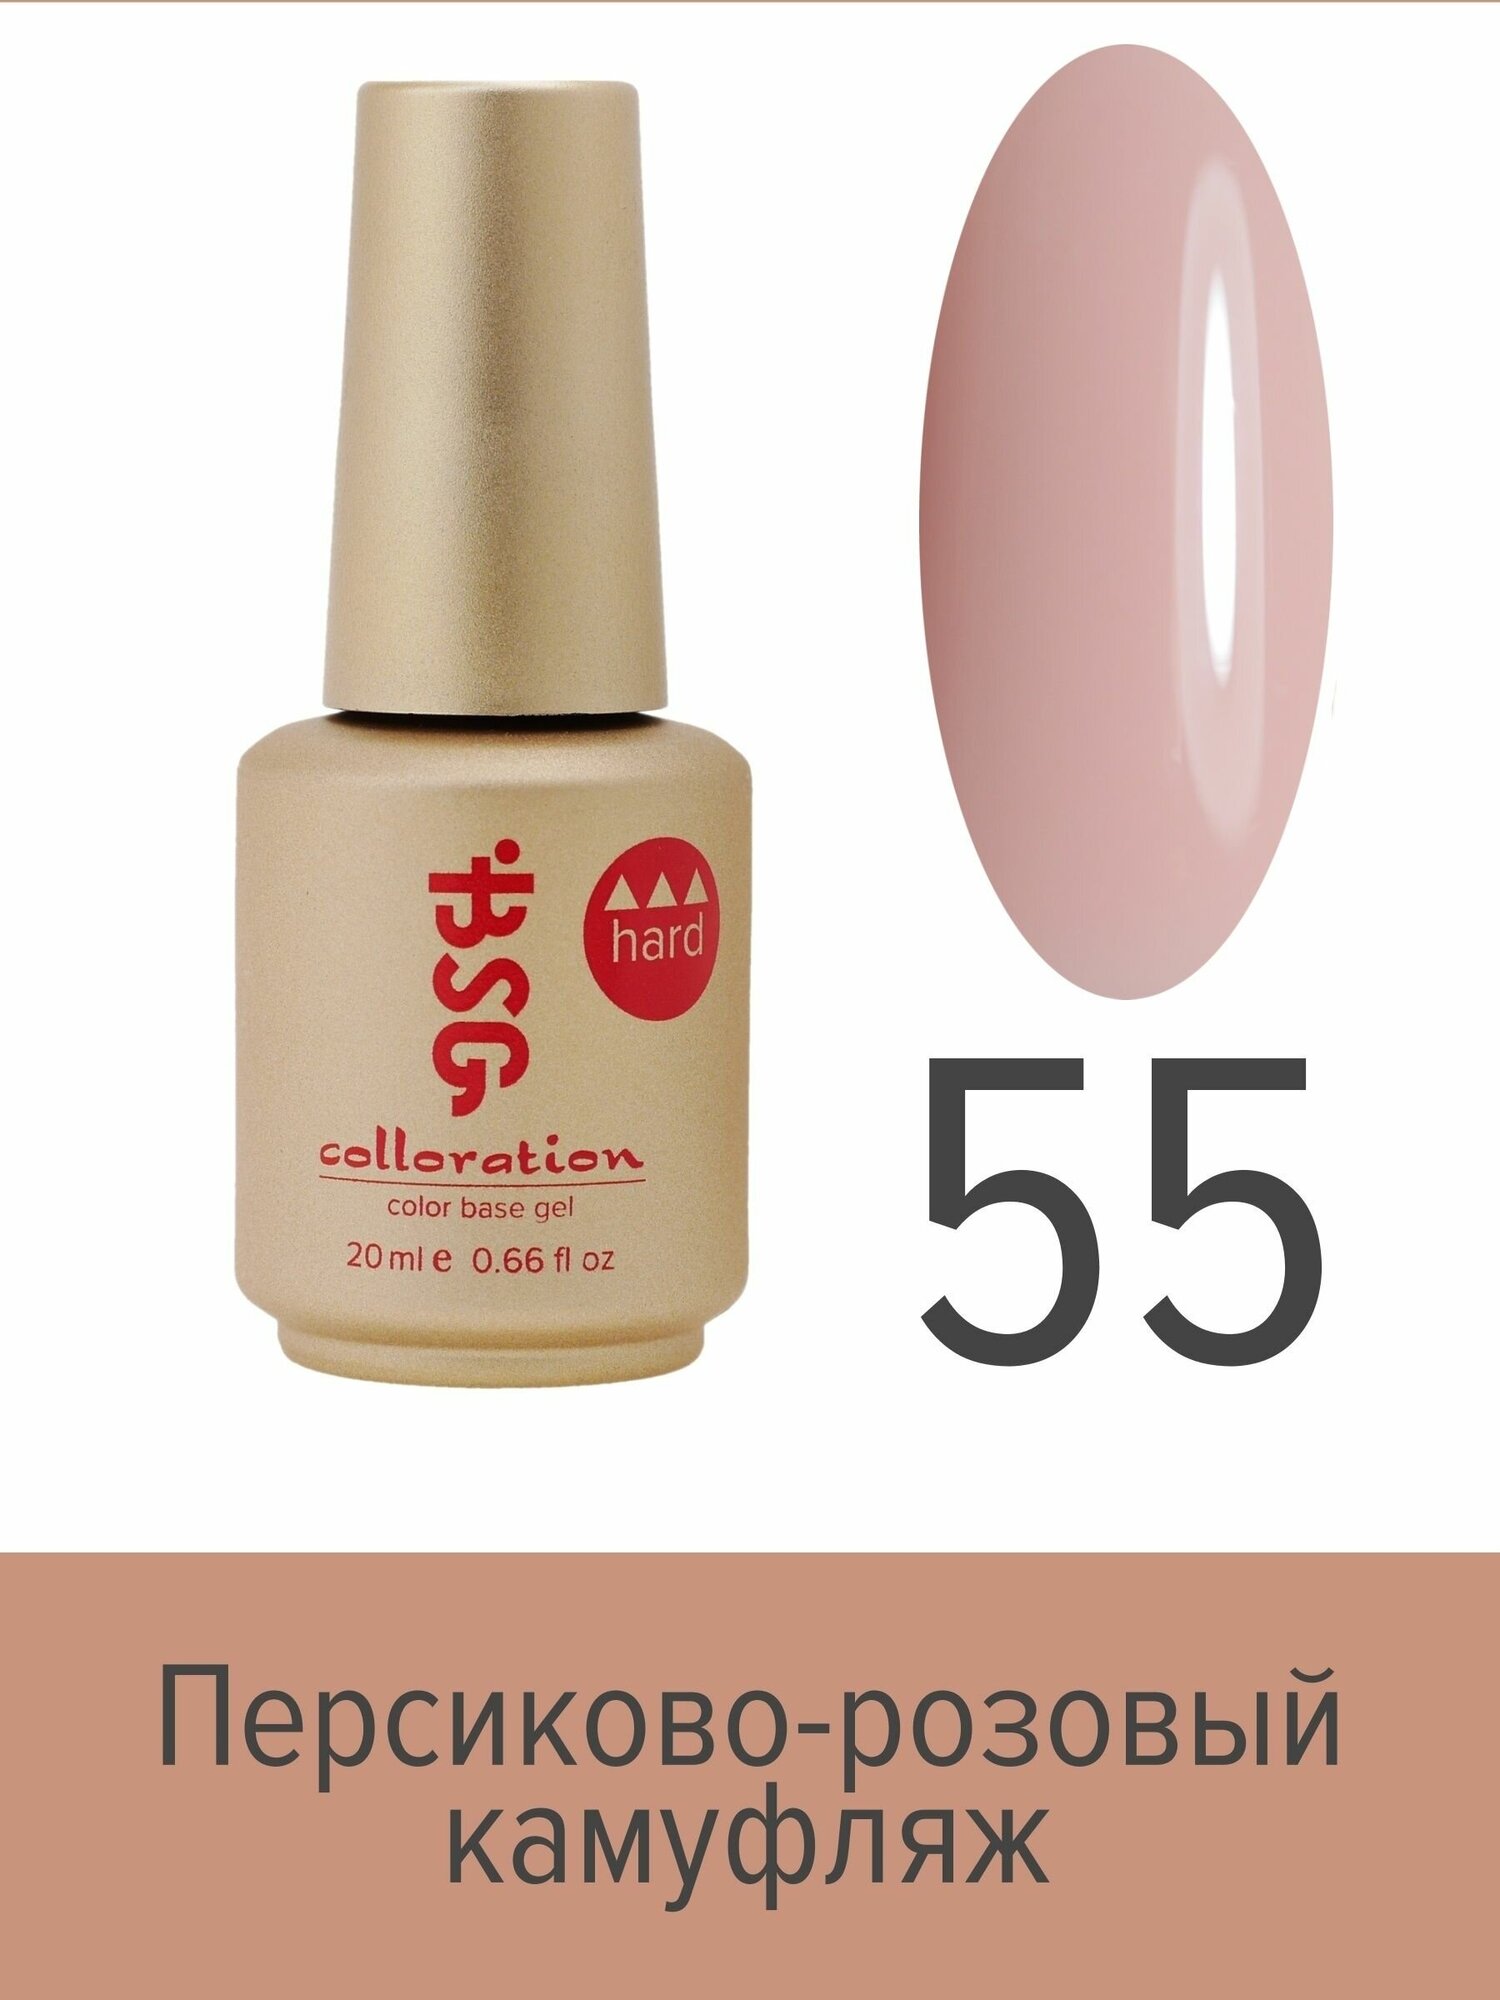 BSG Цветная жесткая база Colloration Hard №55 - Персиково-розовый камуфляж (20 мл)